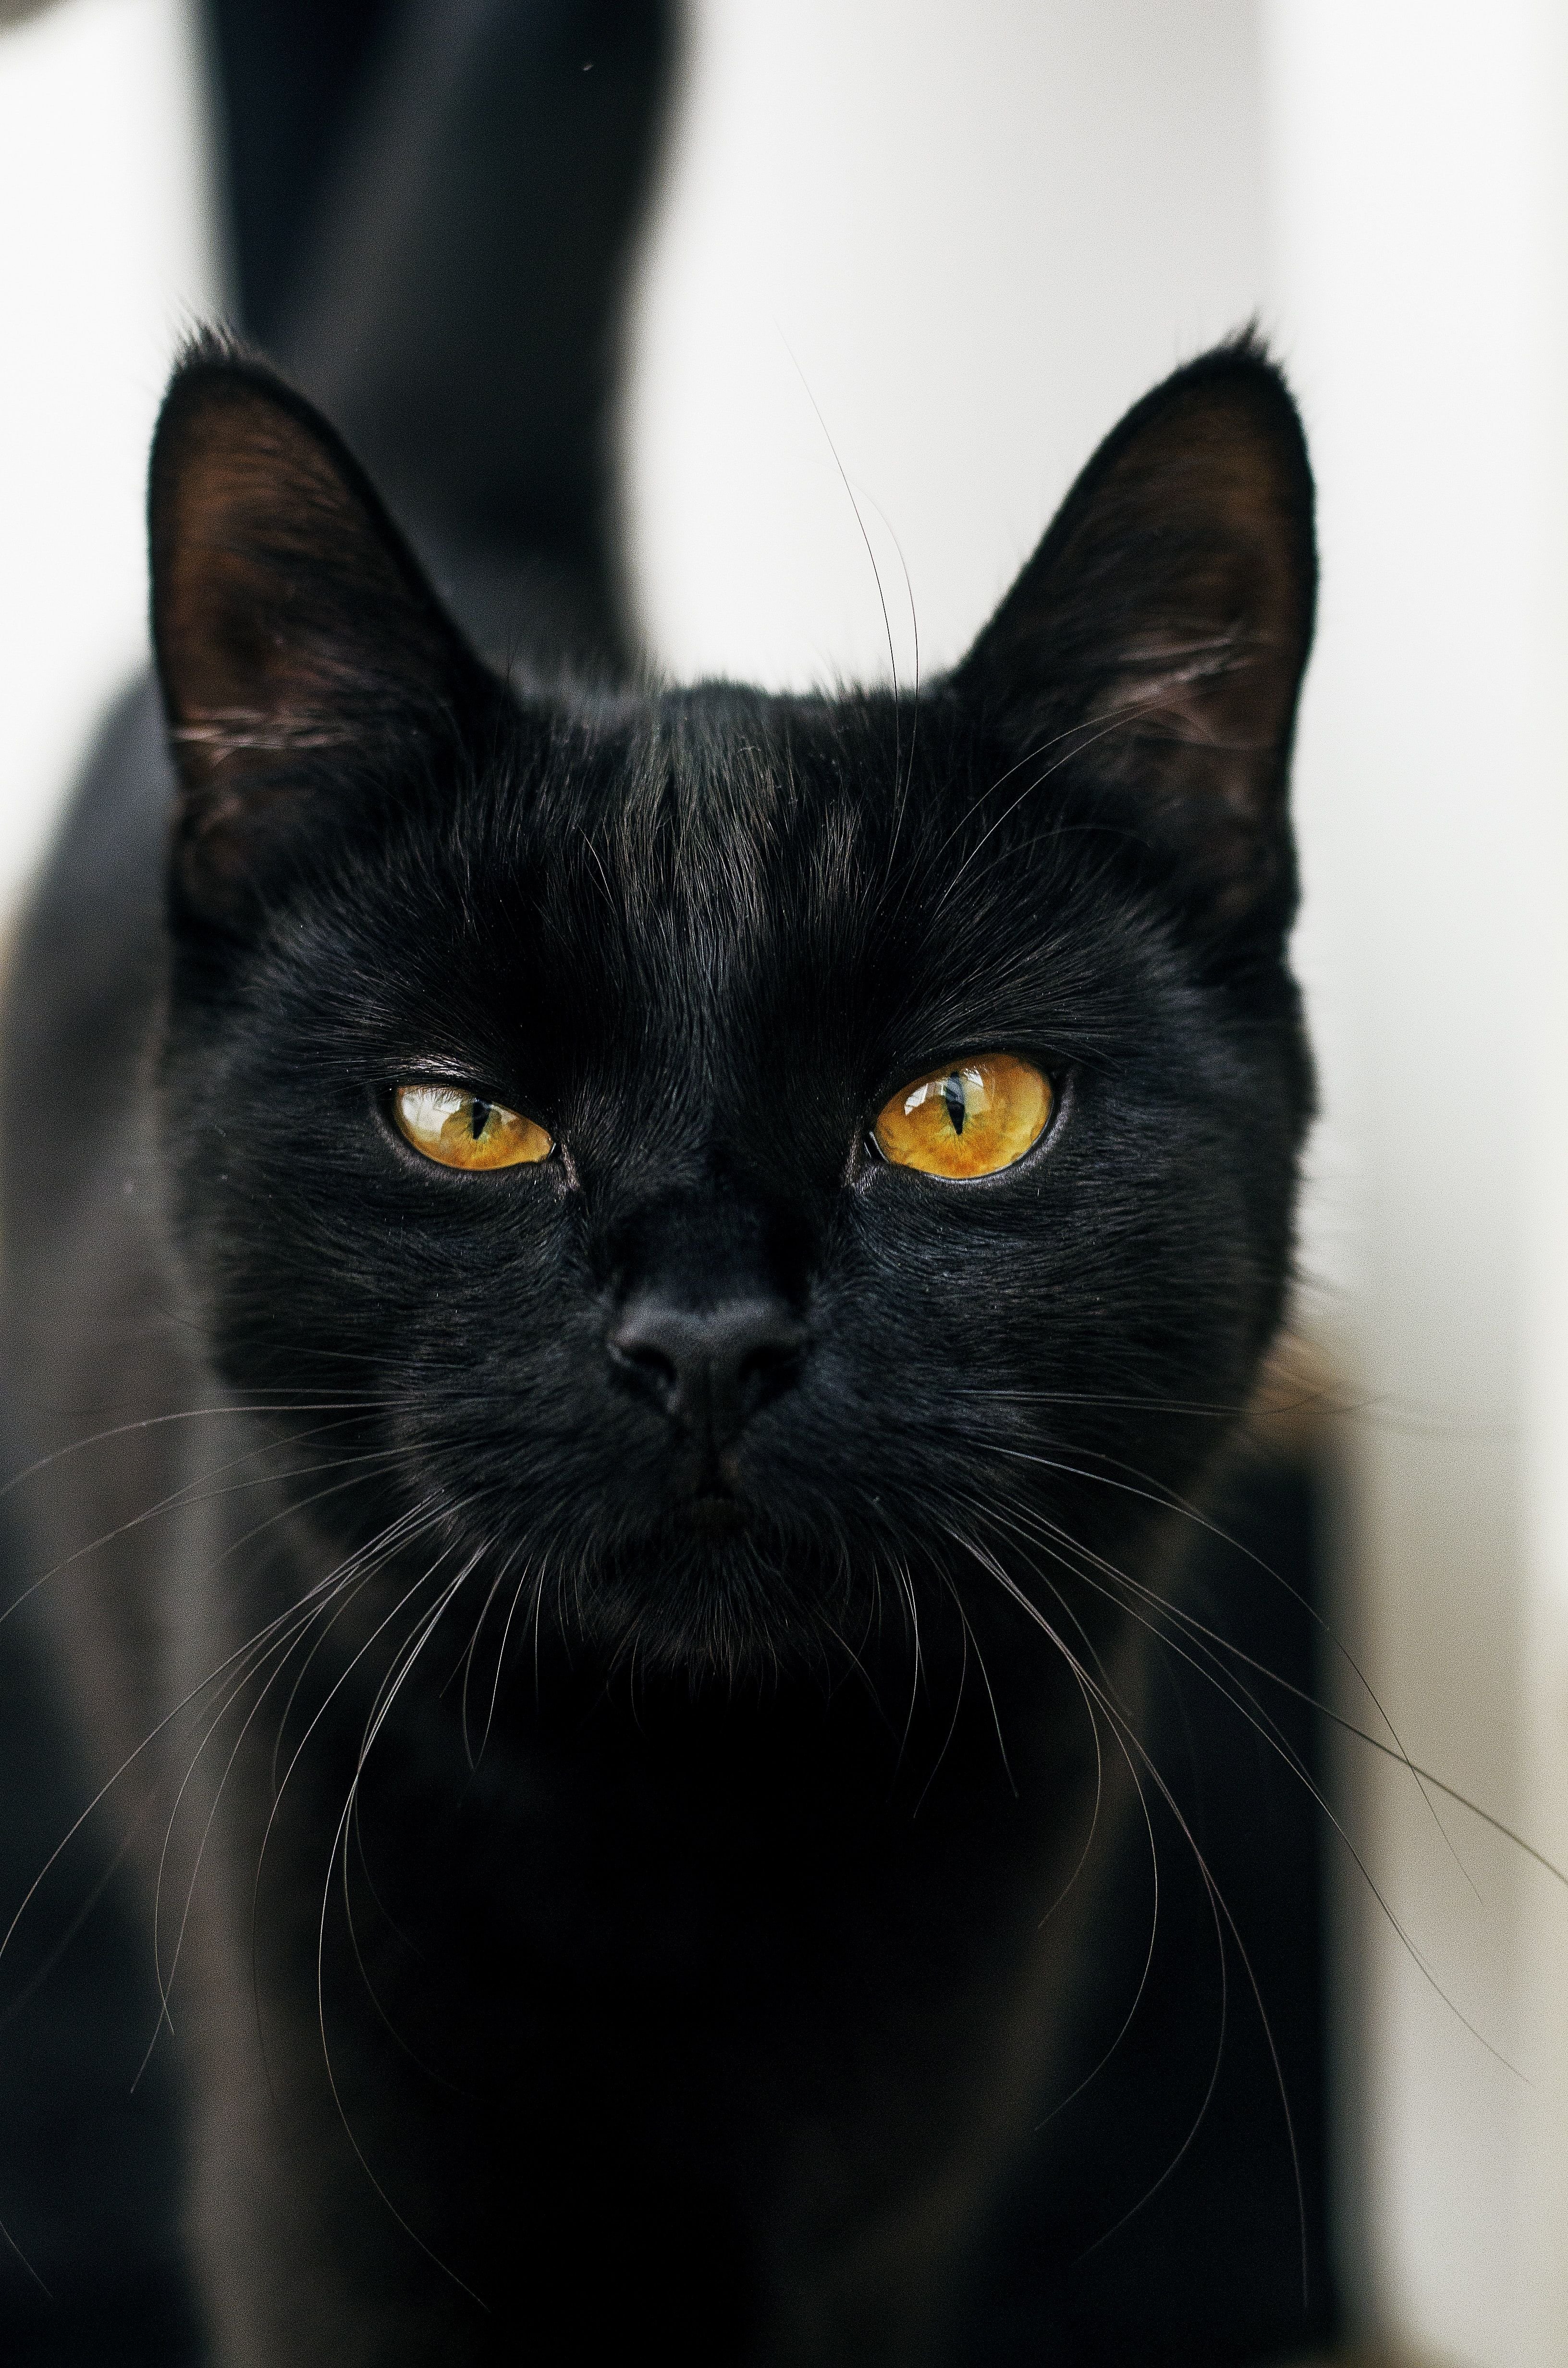 Порода черной кошки с желтыми глазами. Бомбейская кошка. Бомбейская кошка черно белая. Бомбейская кошка с желтыми глазами. Черный гладкошерстный кот с желтыми глазами.